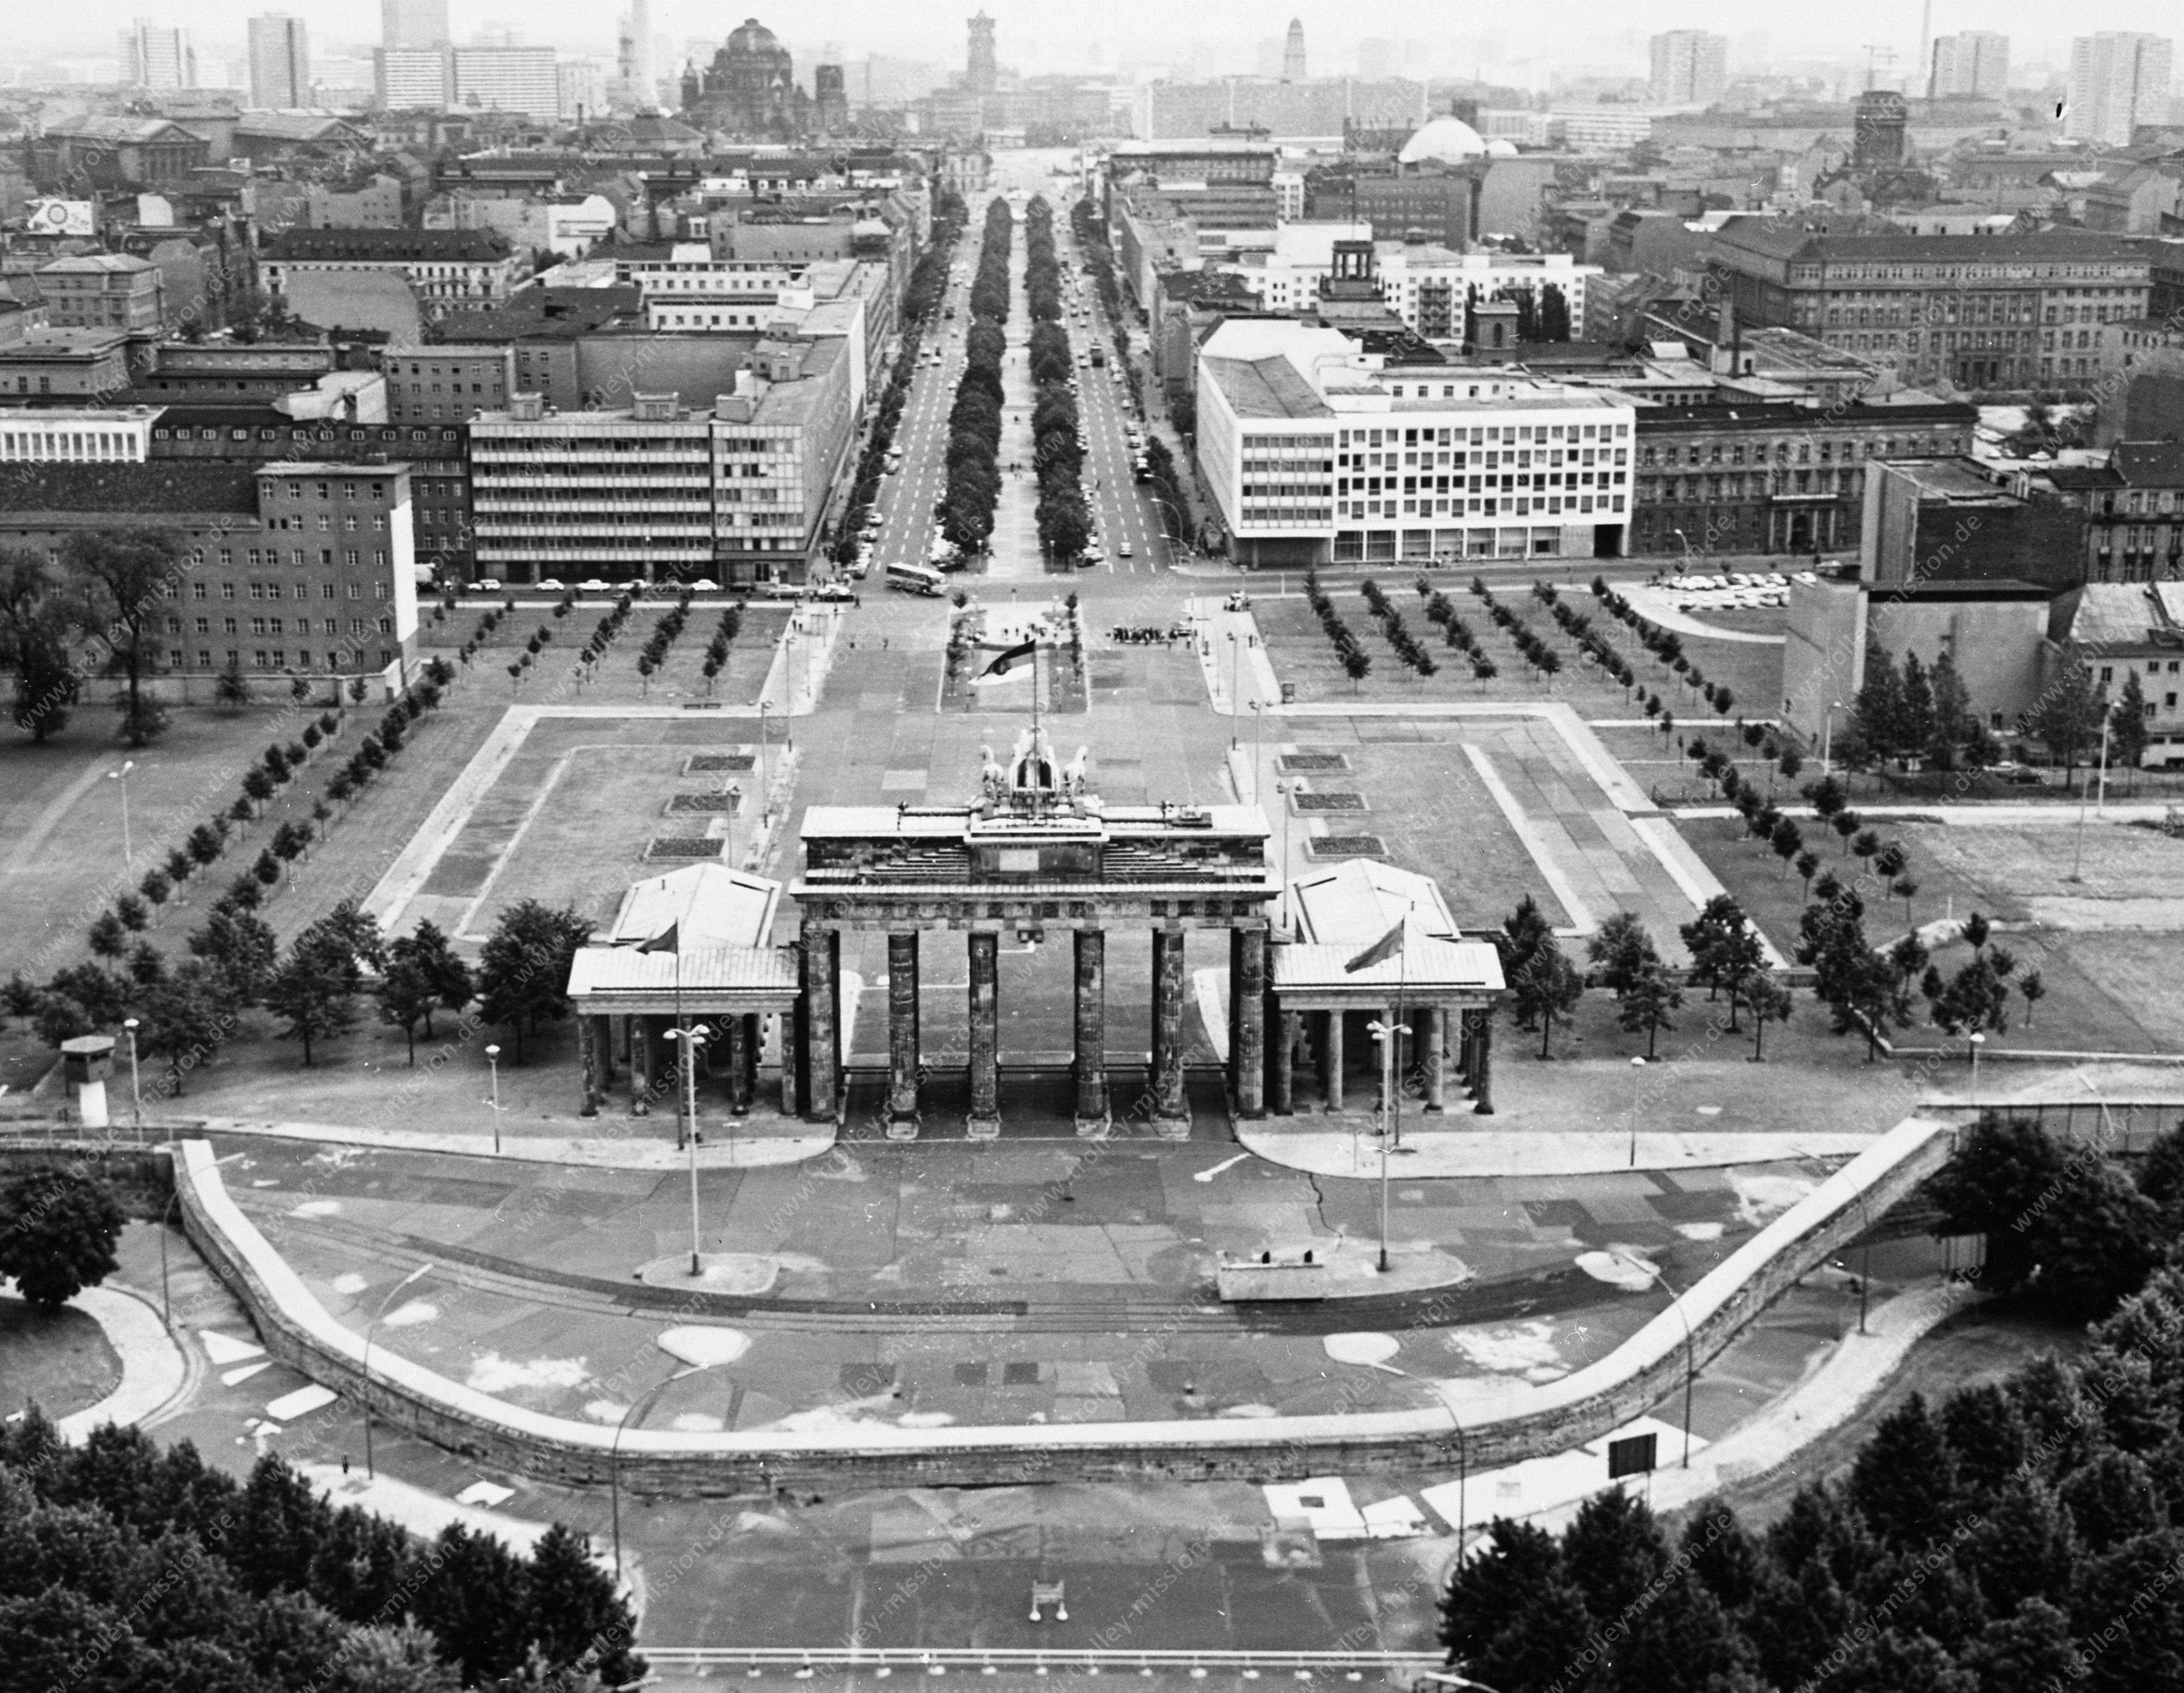 Luftaufnahme Brandenburger Tor - Blick von West-Berlin nach Ost-Berlin